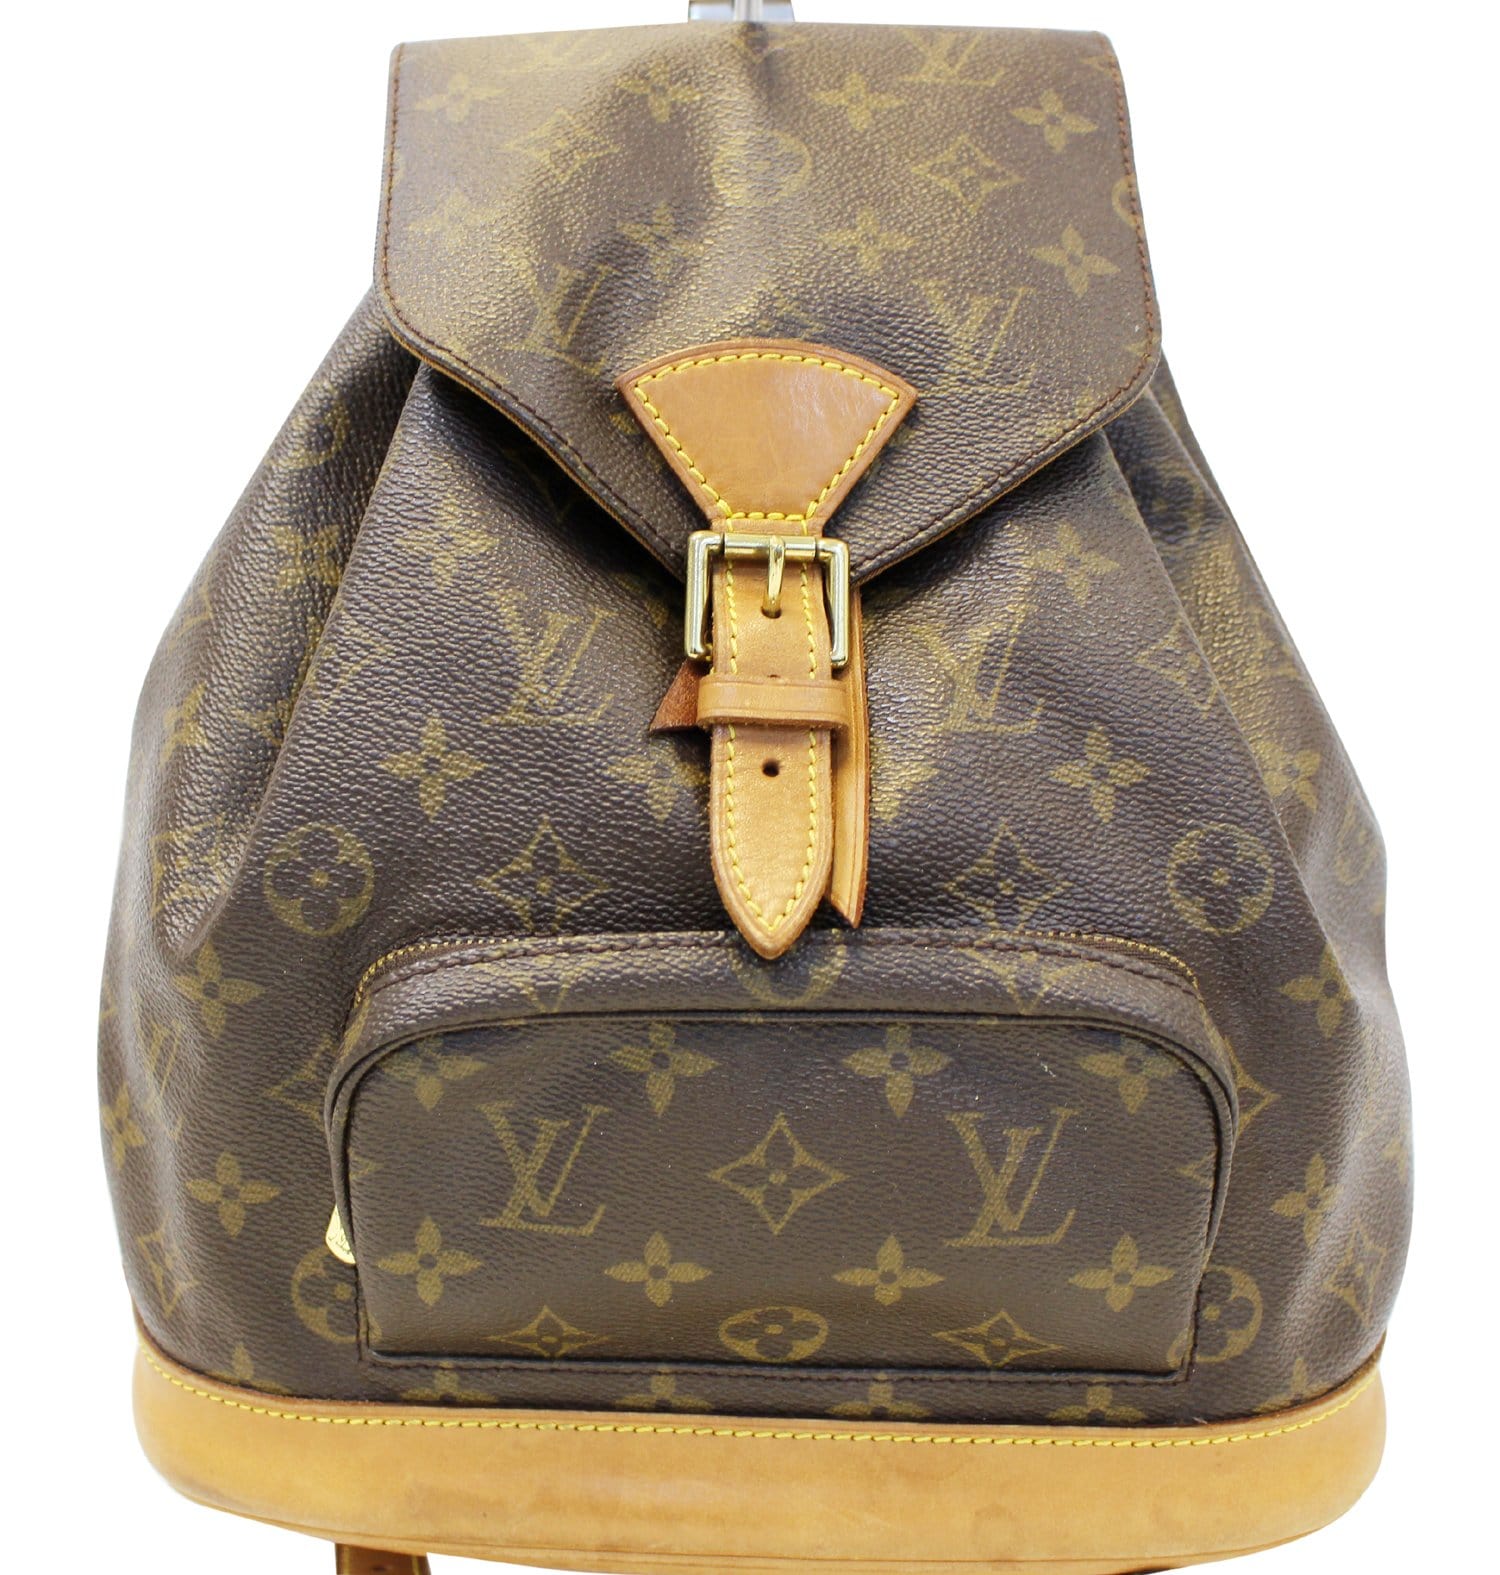 Authentic Louis Vuitton Montsouris MM backpack monogram